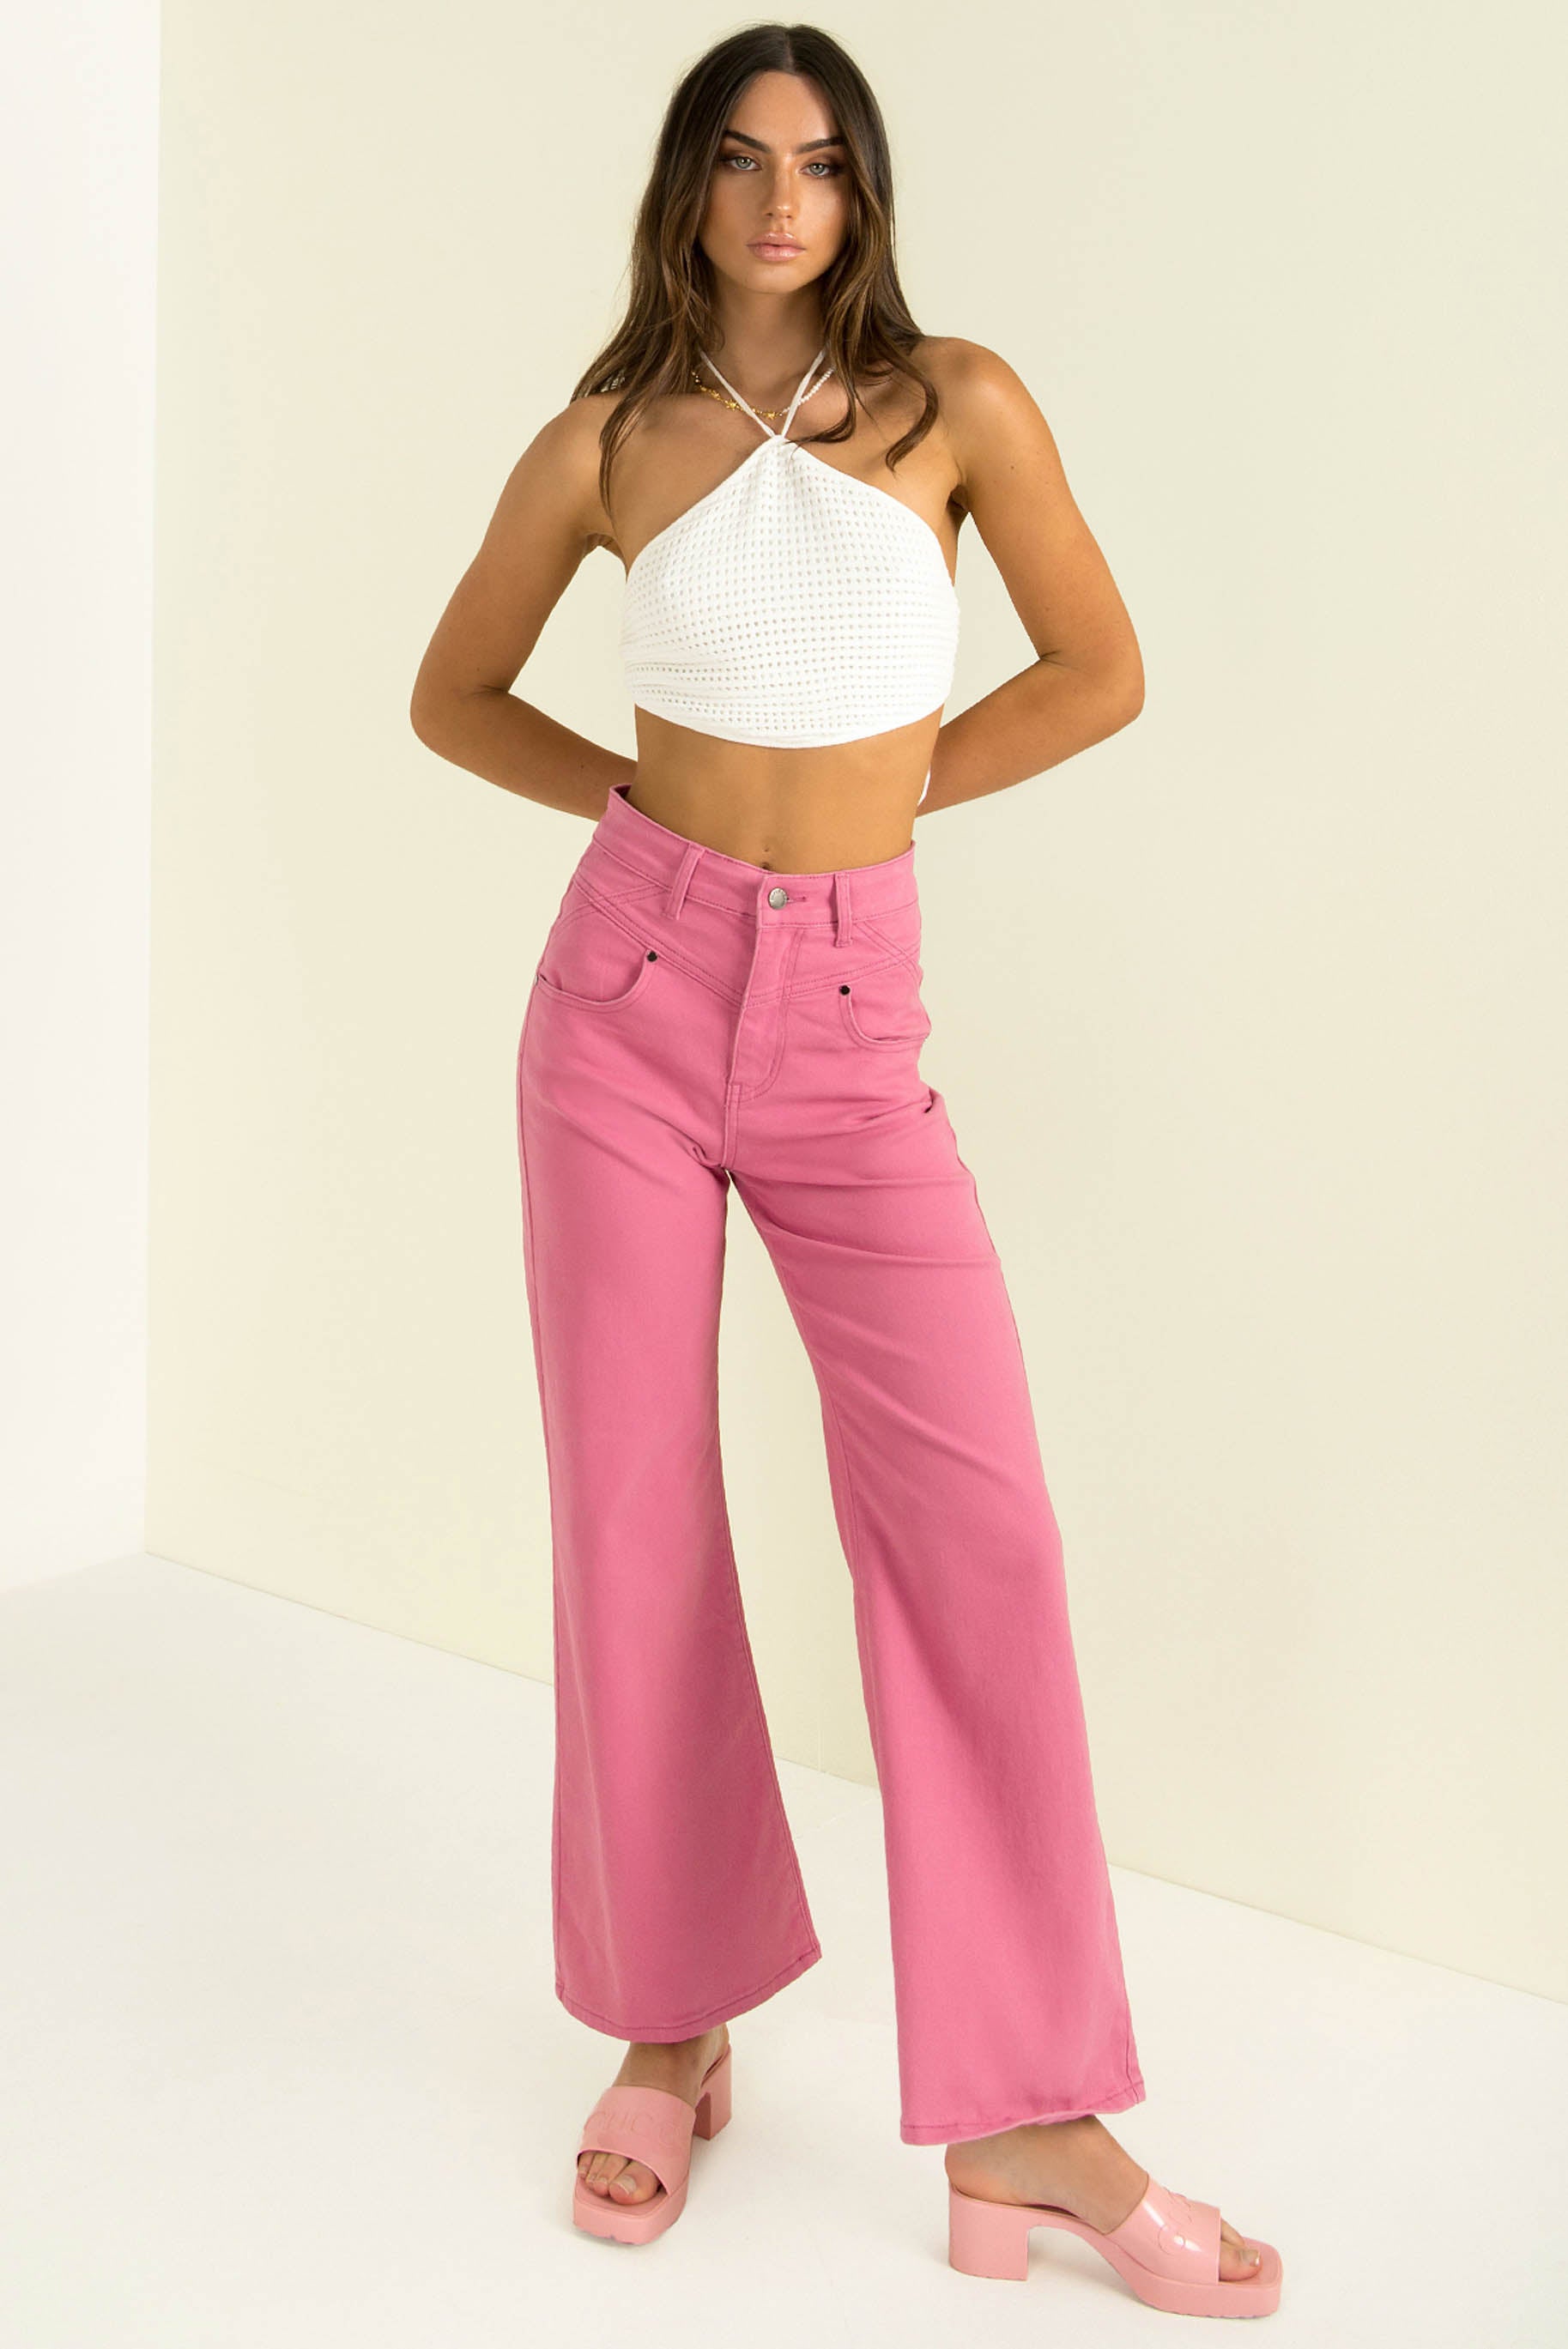 Emmett Jeans / Hot Pink